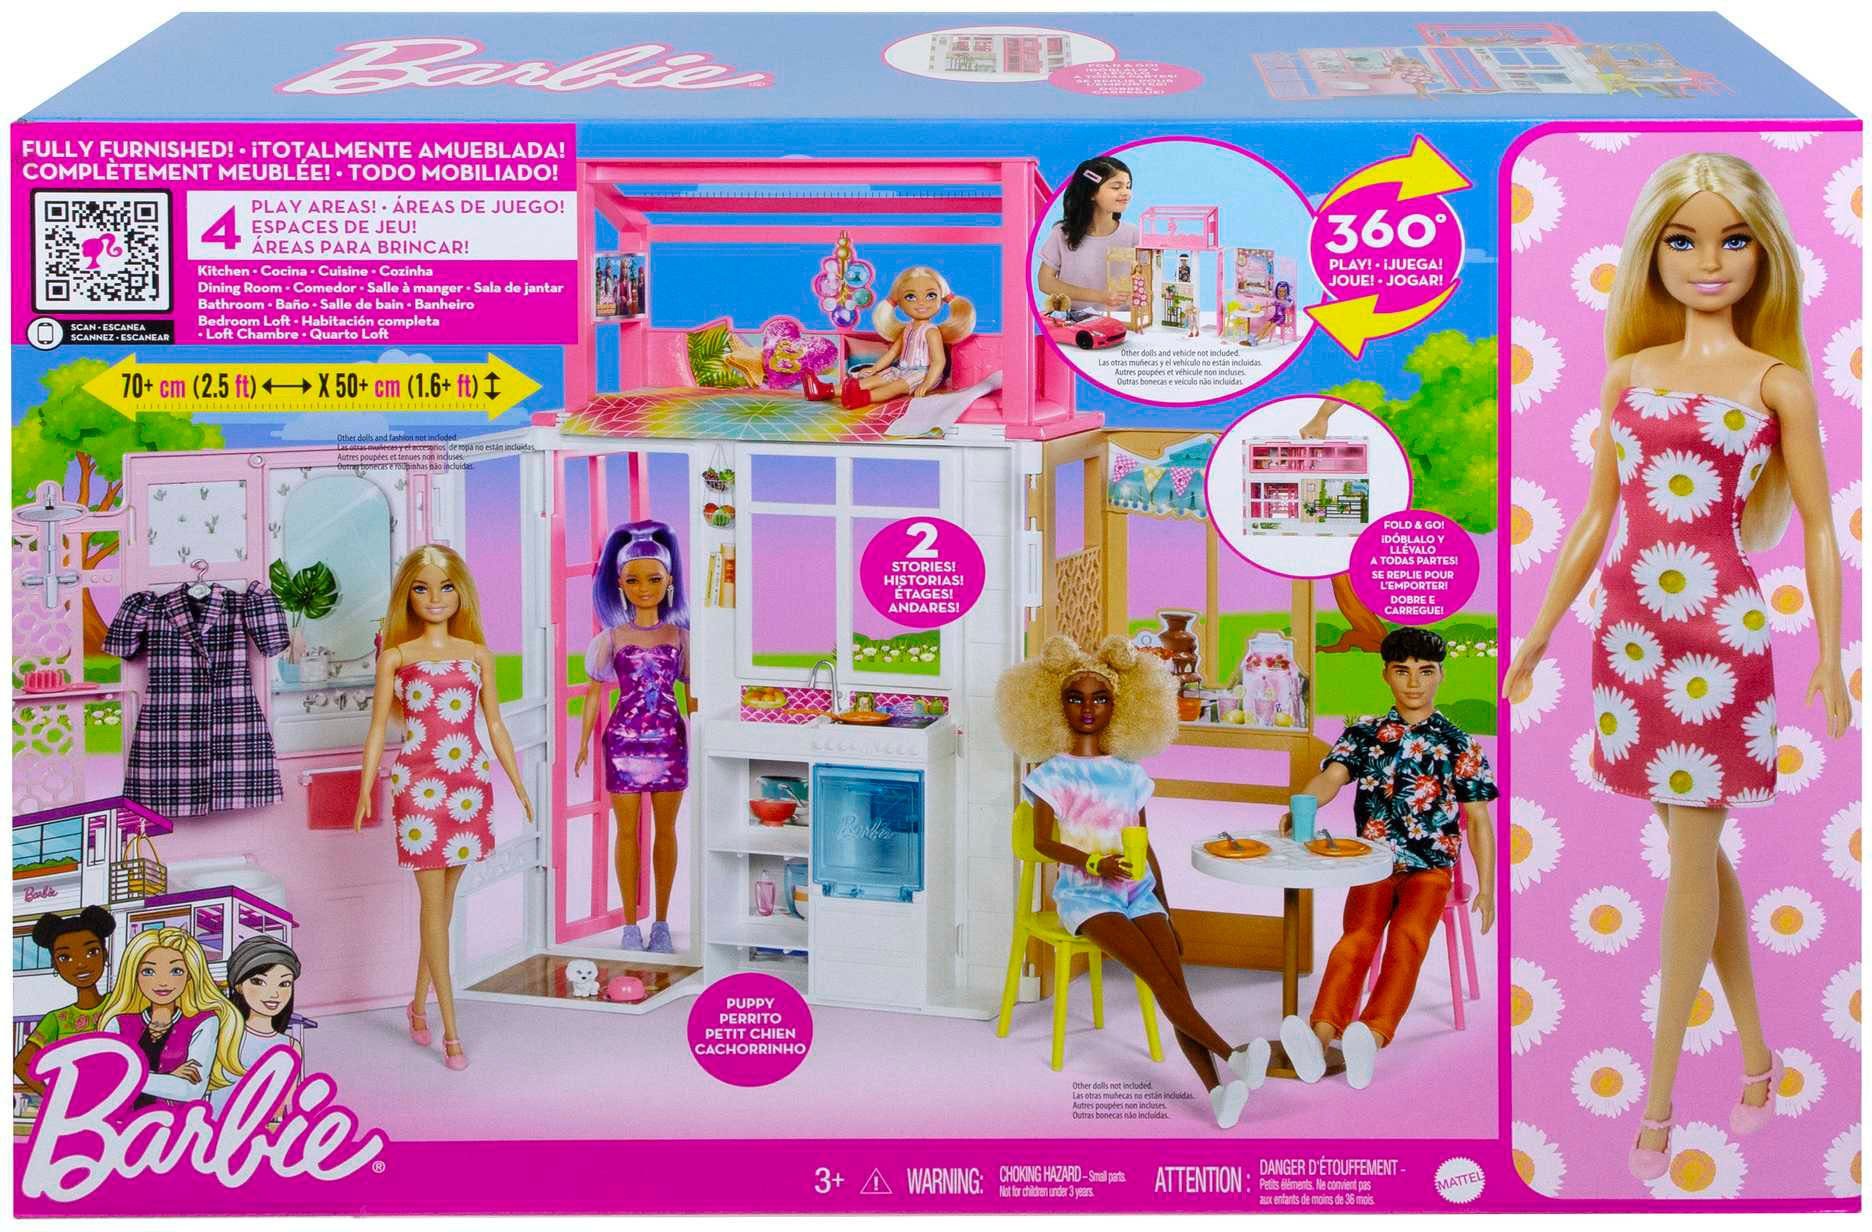 Puppenhaus klappbar Puppe klappbar Mitnehmen; und inkl. zum (blond) Zubehör, Barbie